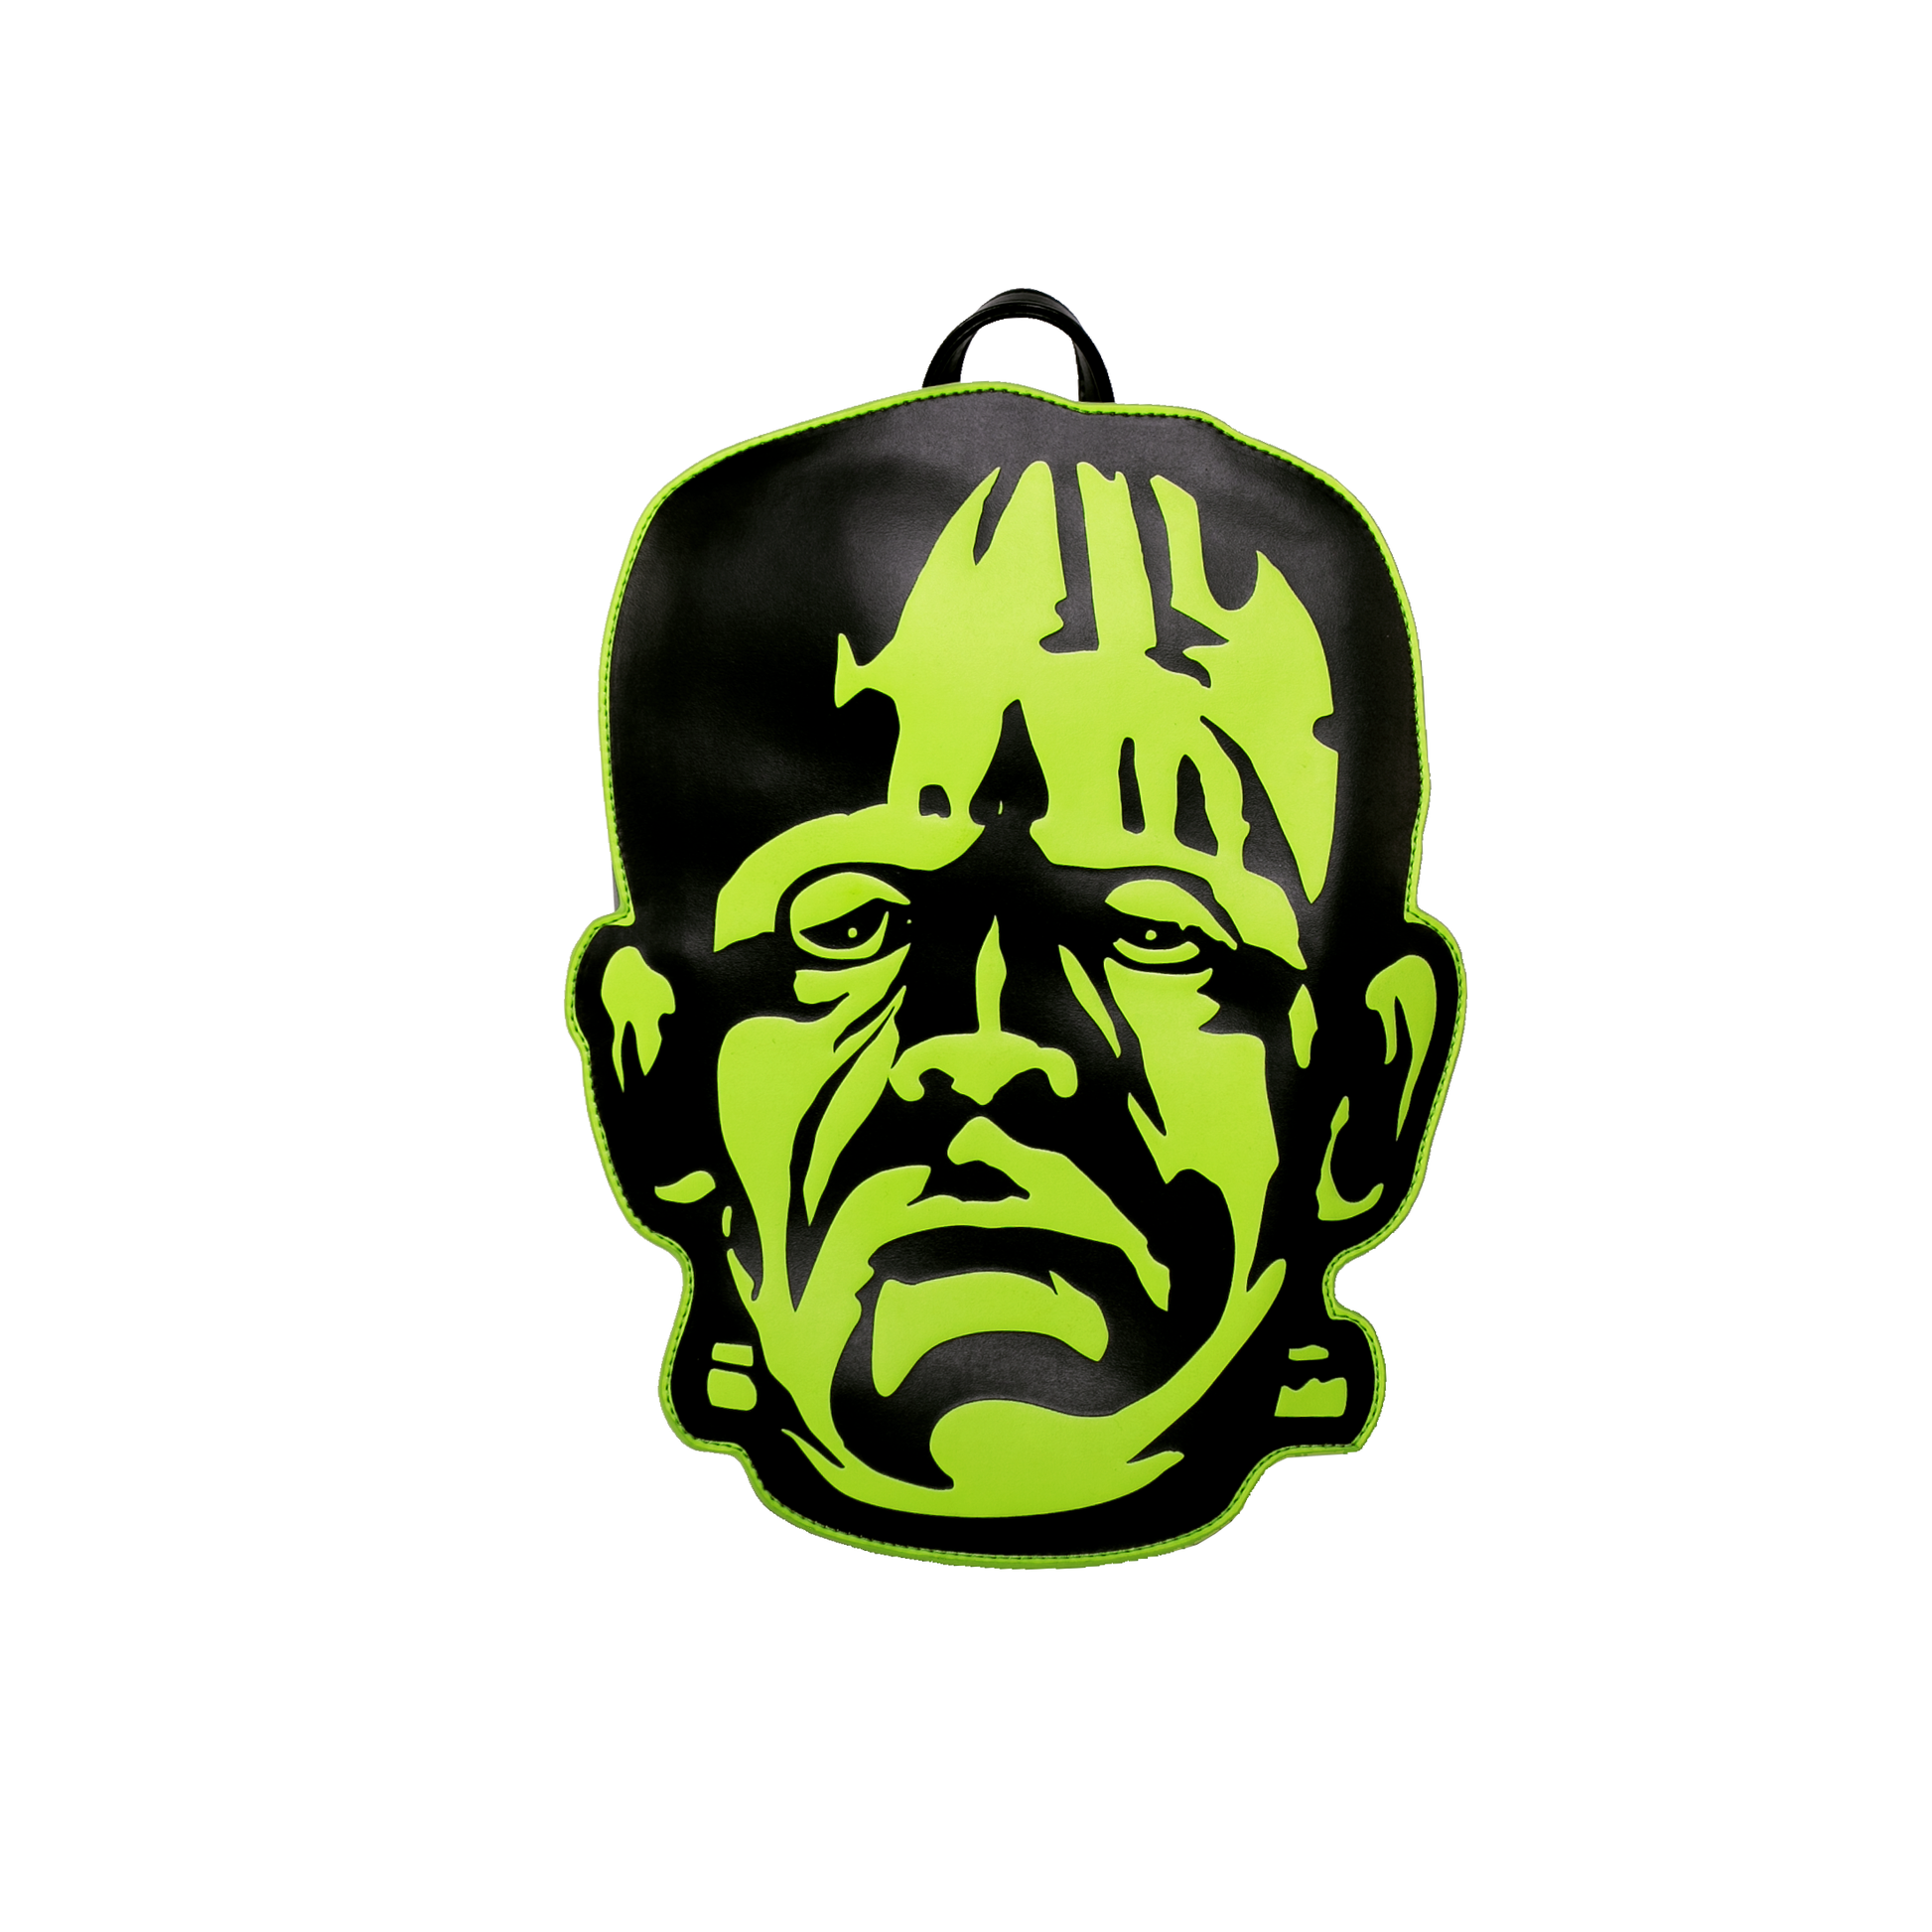 Frankenstein Head Back Pack. Fully Embossed High Quality Vegan PU Mini Back Pack w/ Adjustable Straps & Inside pocket. Rock Rebel Original Design. Punk Rock/Alternative & Horror Inspired Fashion.